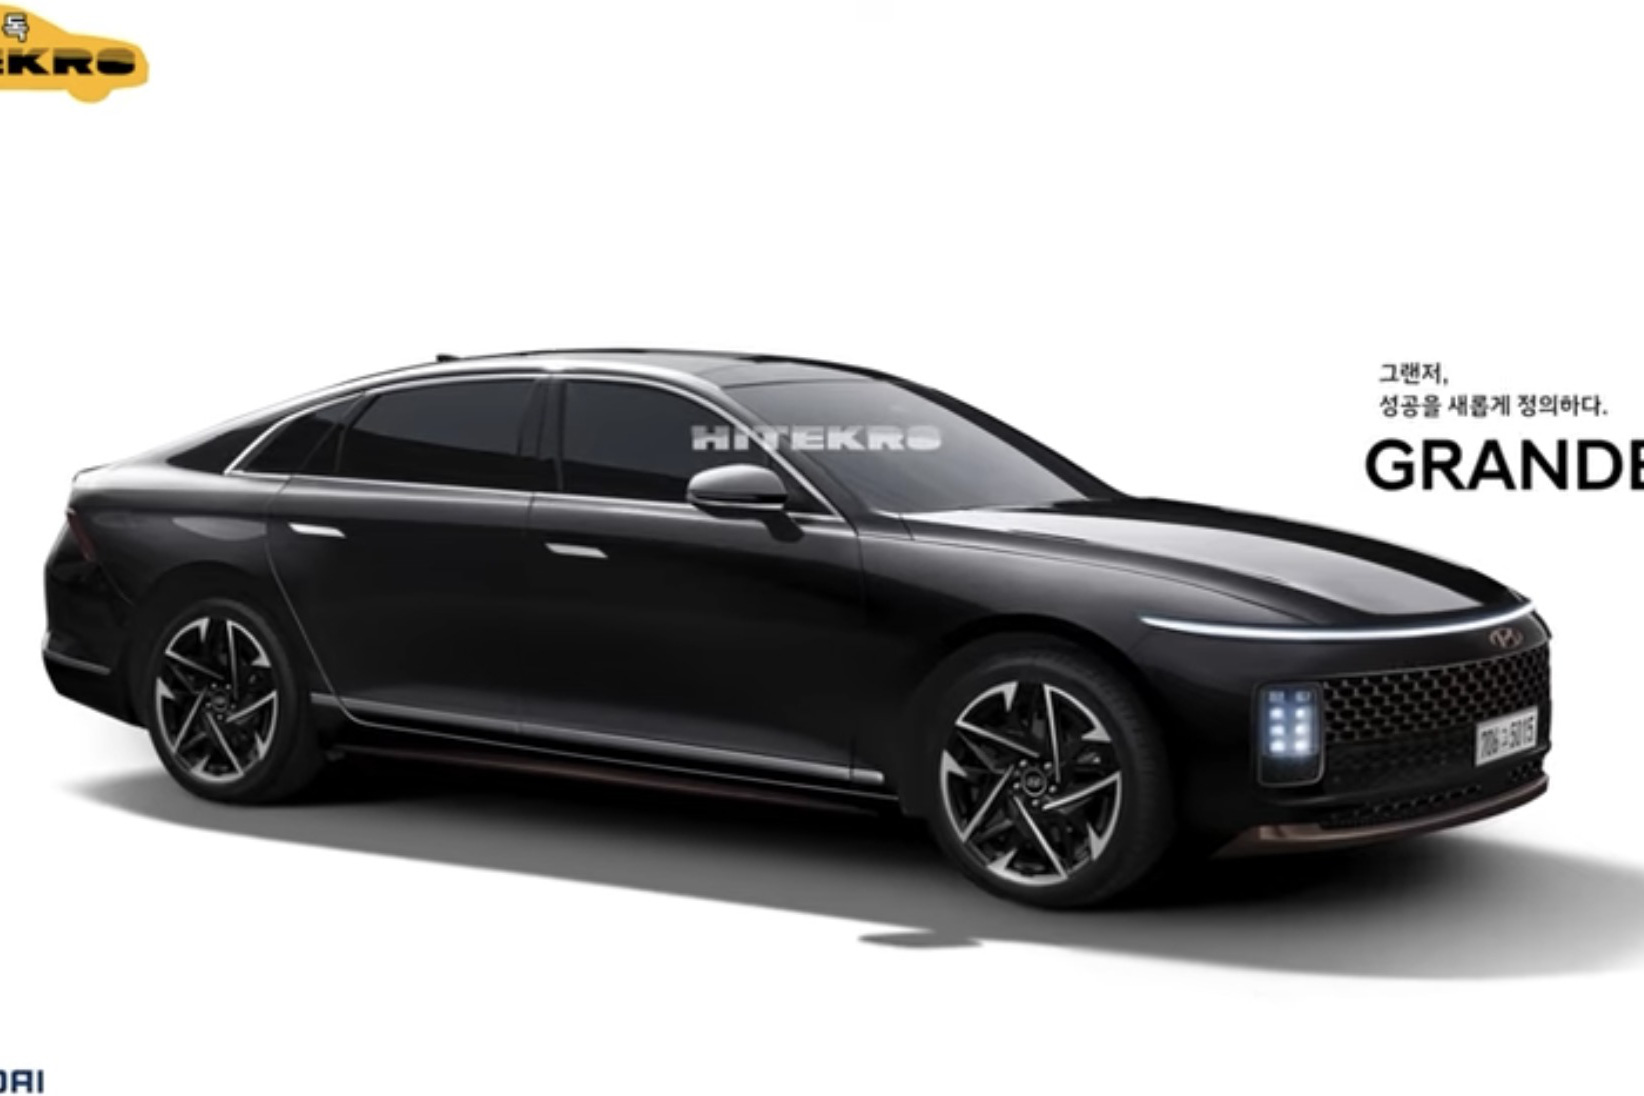 Xem trước Hyundai Grandeur đời mới: Xe Hàn thực sự ngày càng đẹp